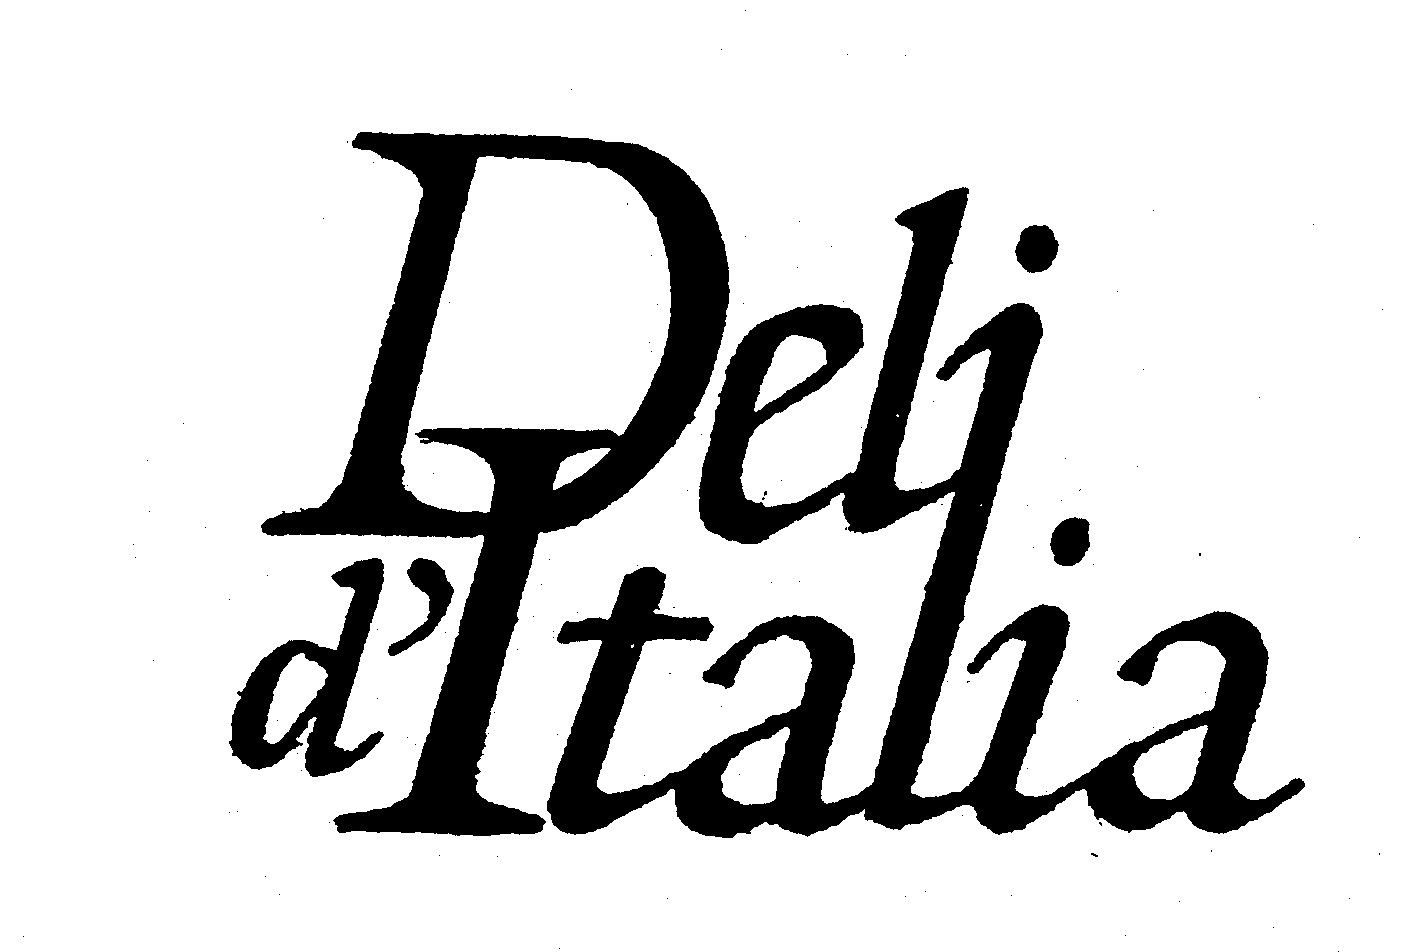 DELI D'ITALIA